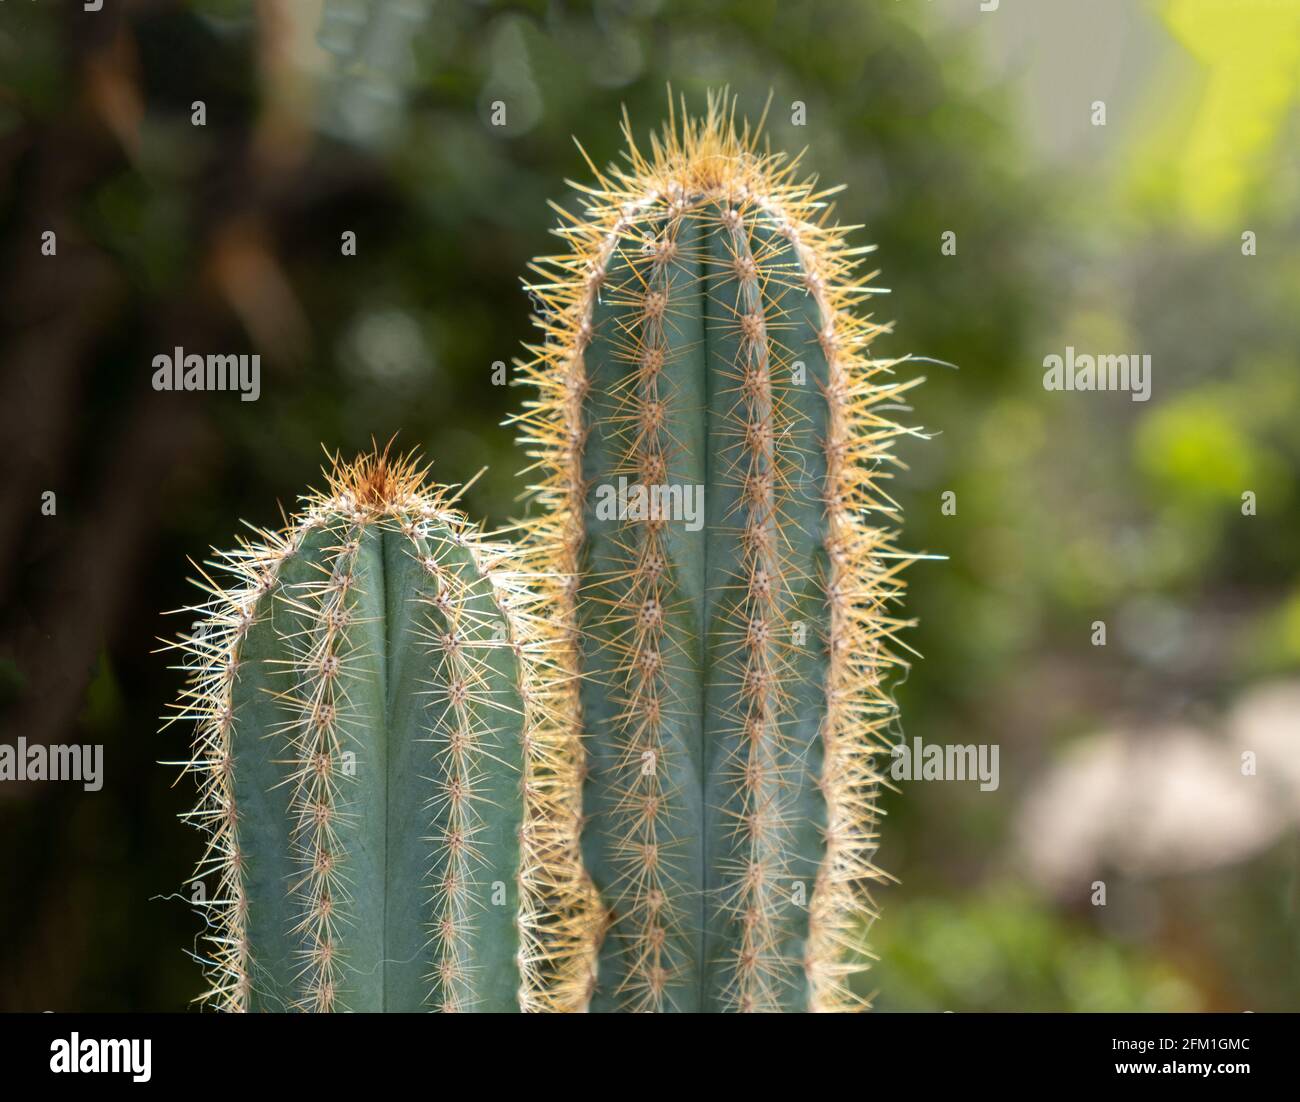 San Pedro Kaktus, trichocereus, echinopsis pachanoi mit Stacheln Hintergrund. Tropische wilde scharfe Dornen Pflanzen, Kakteen, enthalten Meskalin, Halluzinogeni Stockfoto